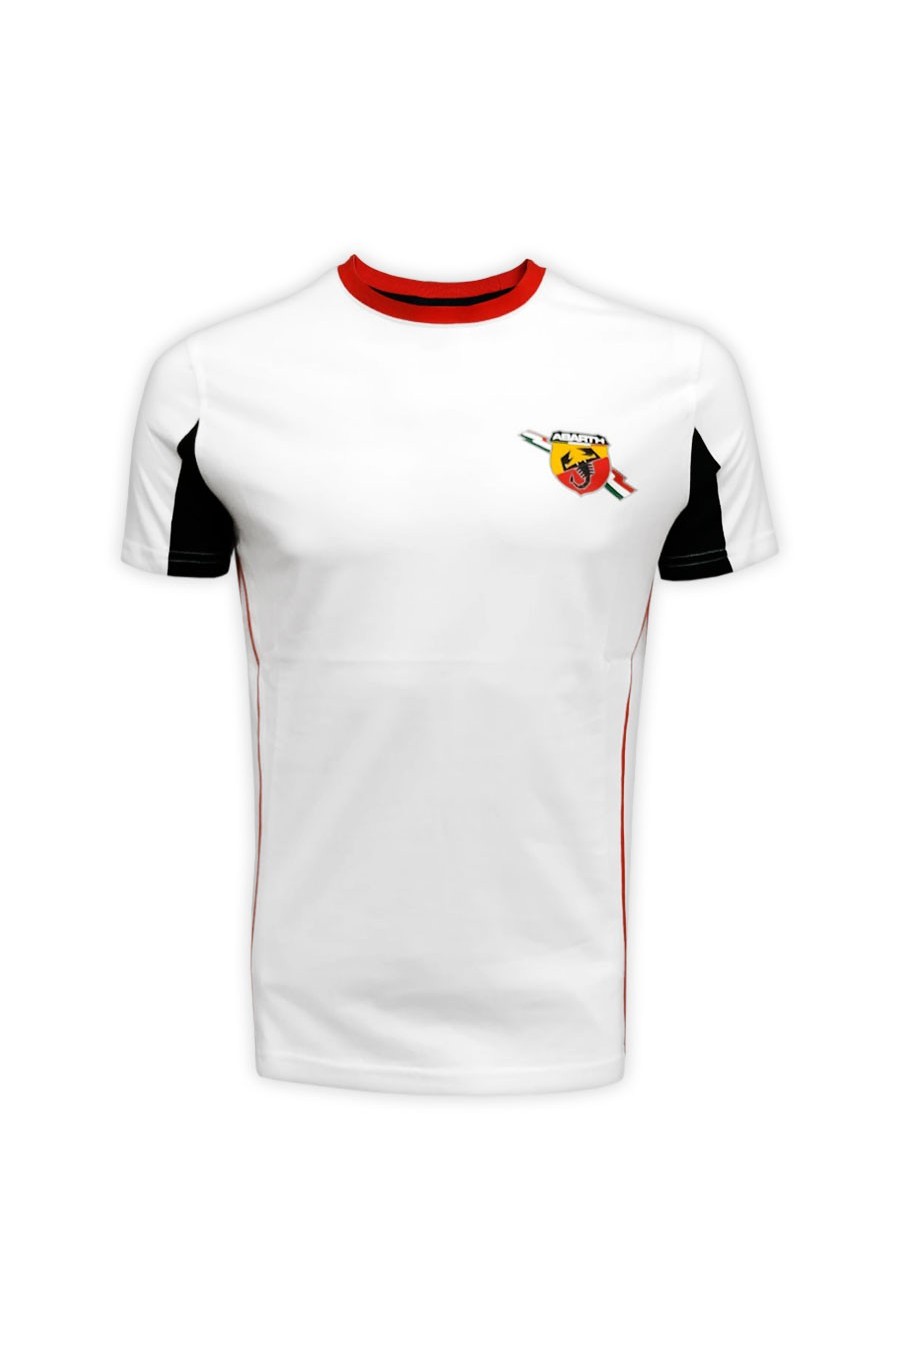 Camiseta Abarth Corse